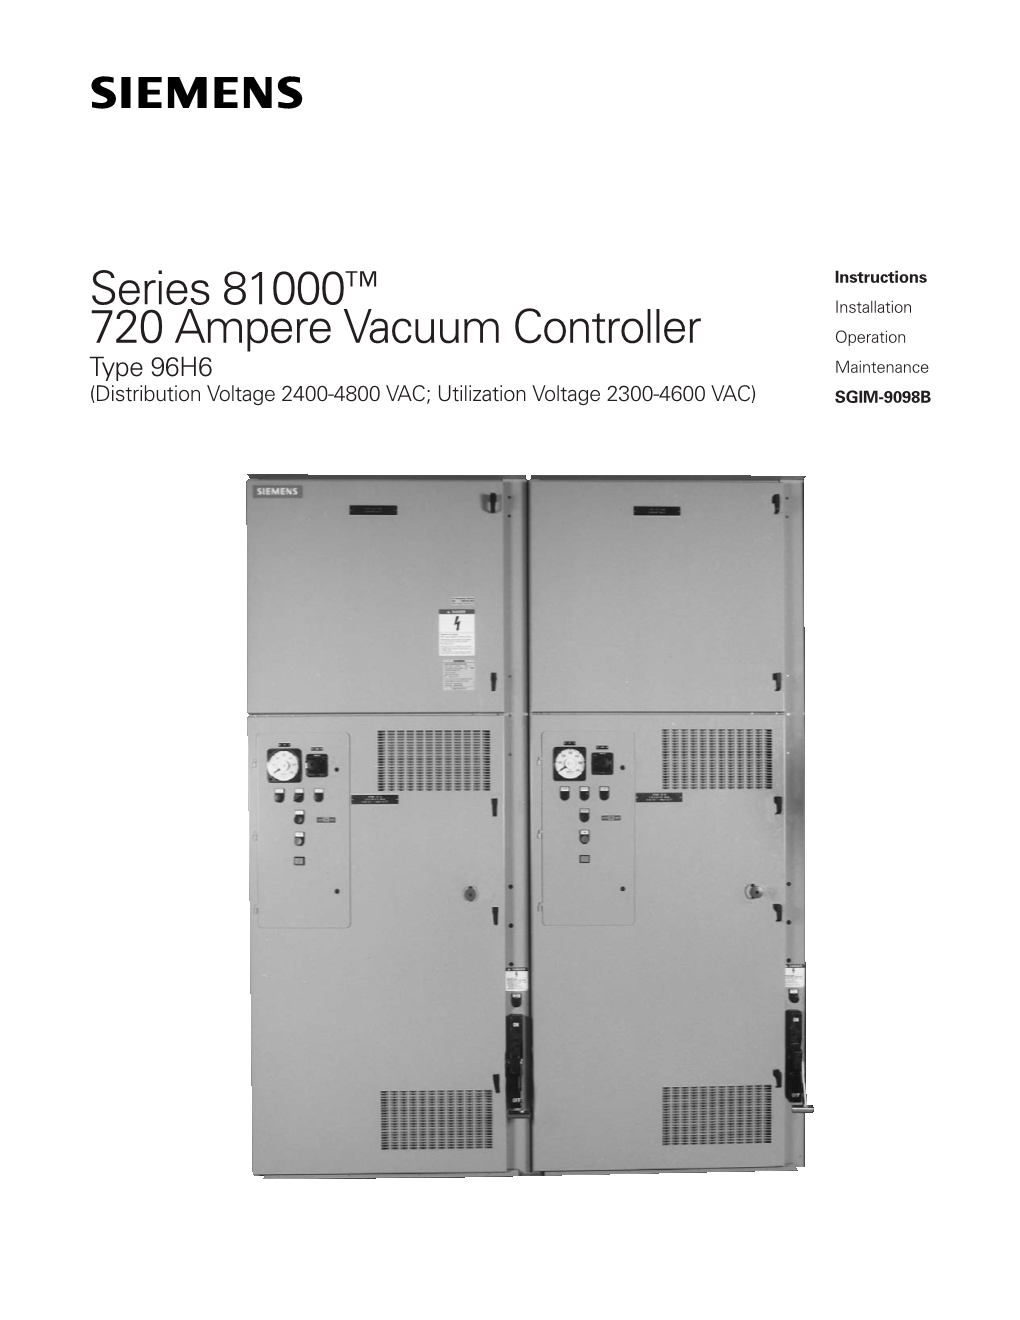 Series 81000™ 720 Ampere Vacuum Controller